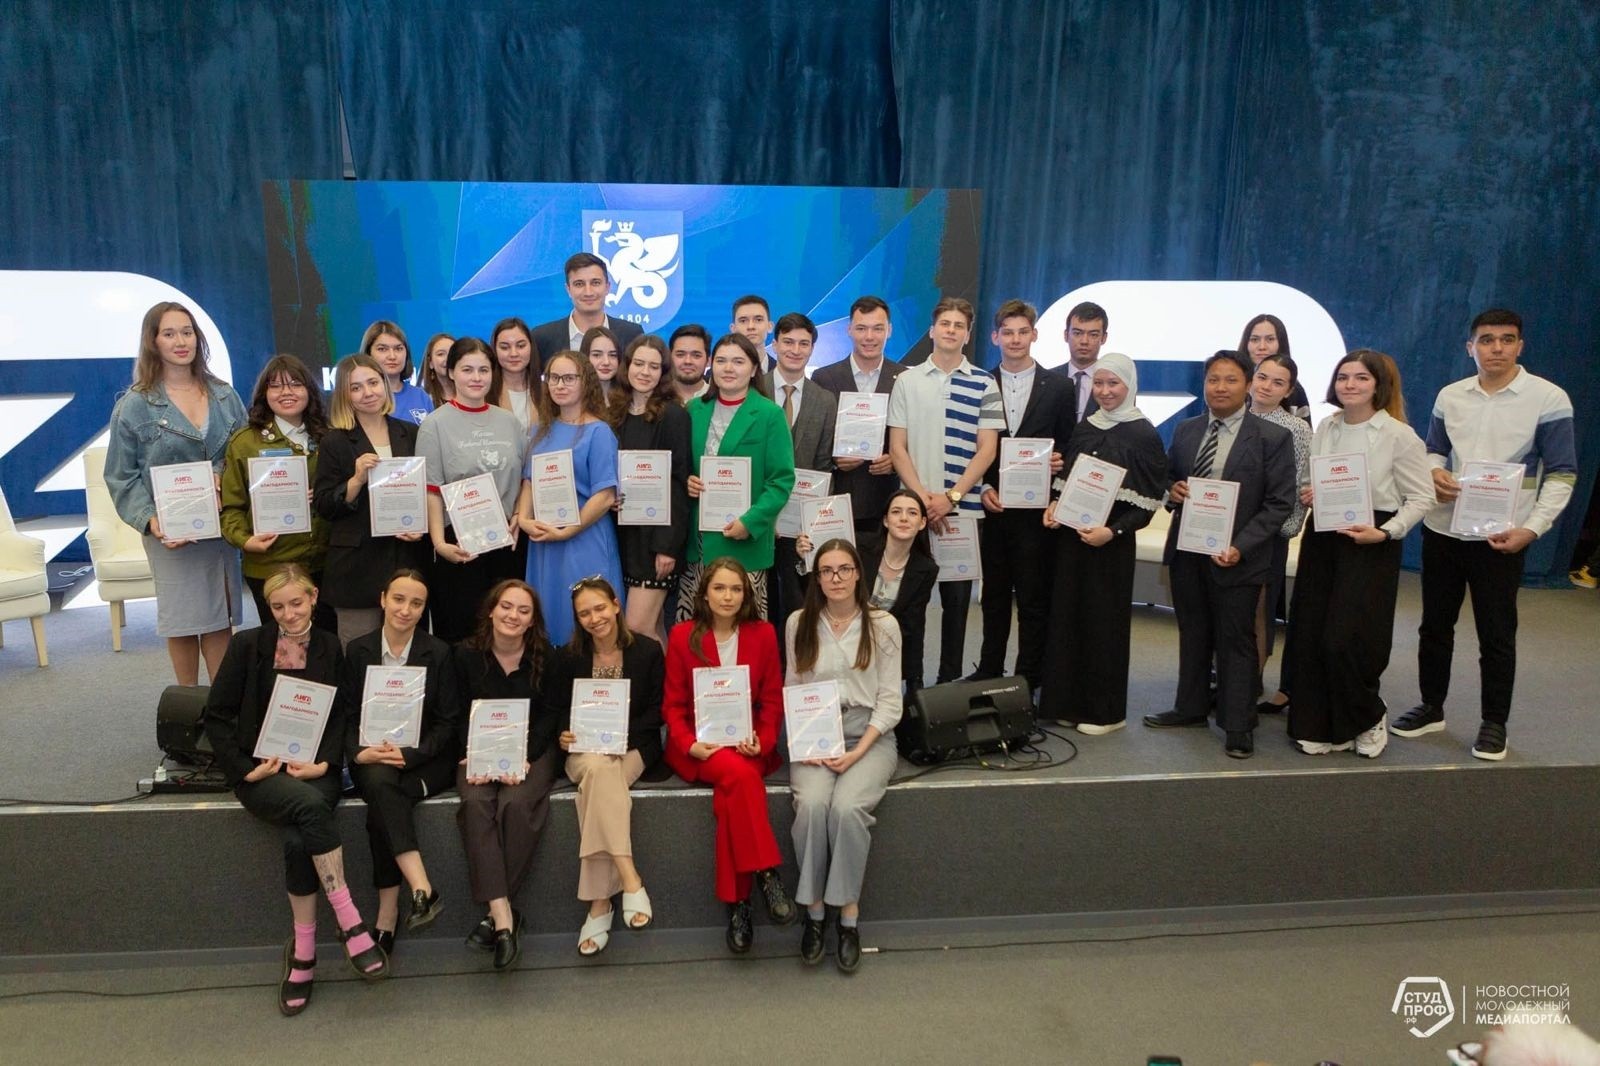 Студенты и сотрудники Инженерного института отмечены наградами в сфере молодежной политики ,день молодежи, студенческая жизнь